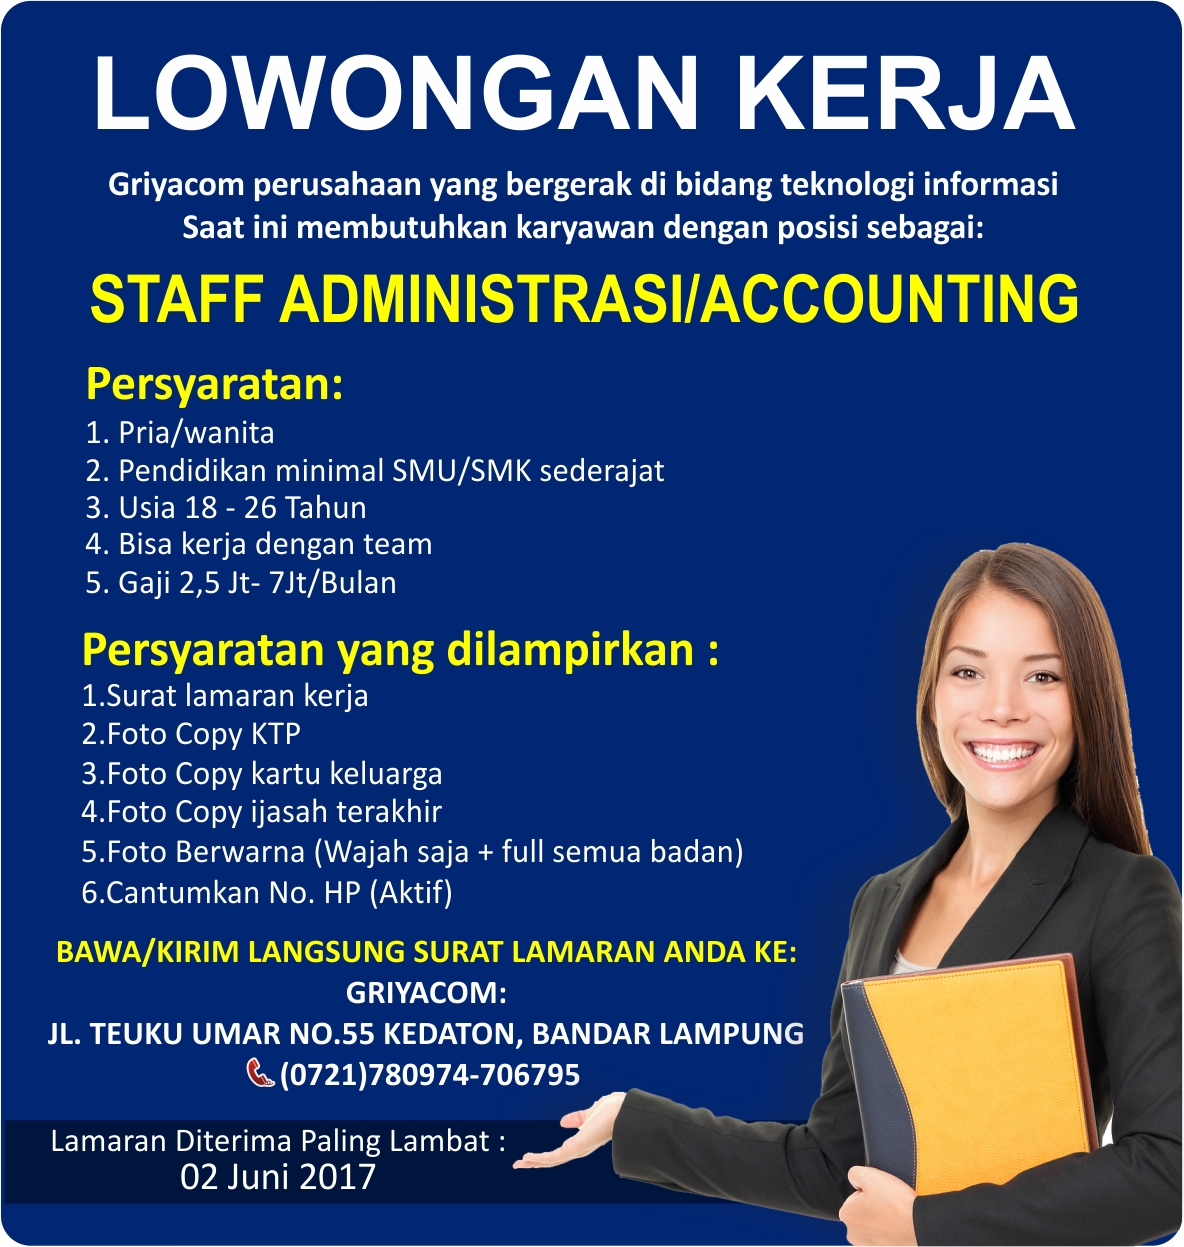 Lowongan Bank Bri Lampung - Lowongan Kerja Indonesia